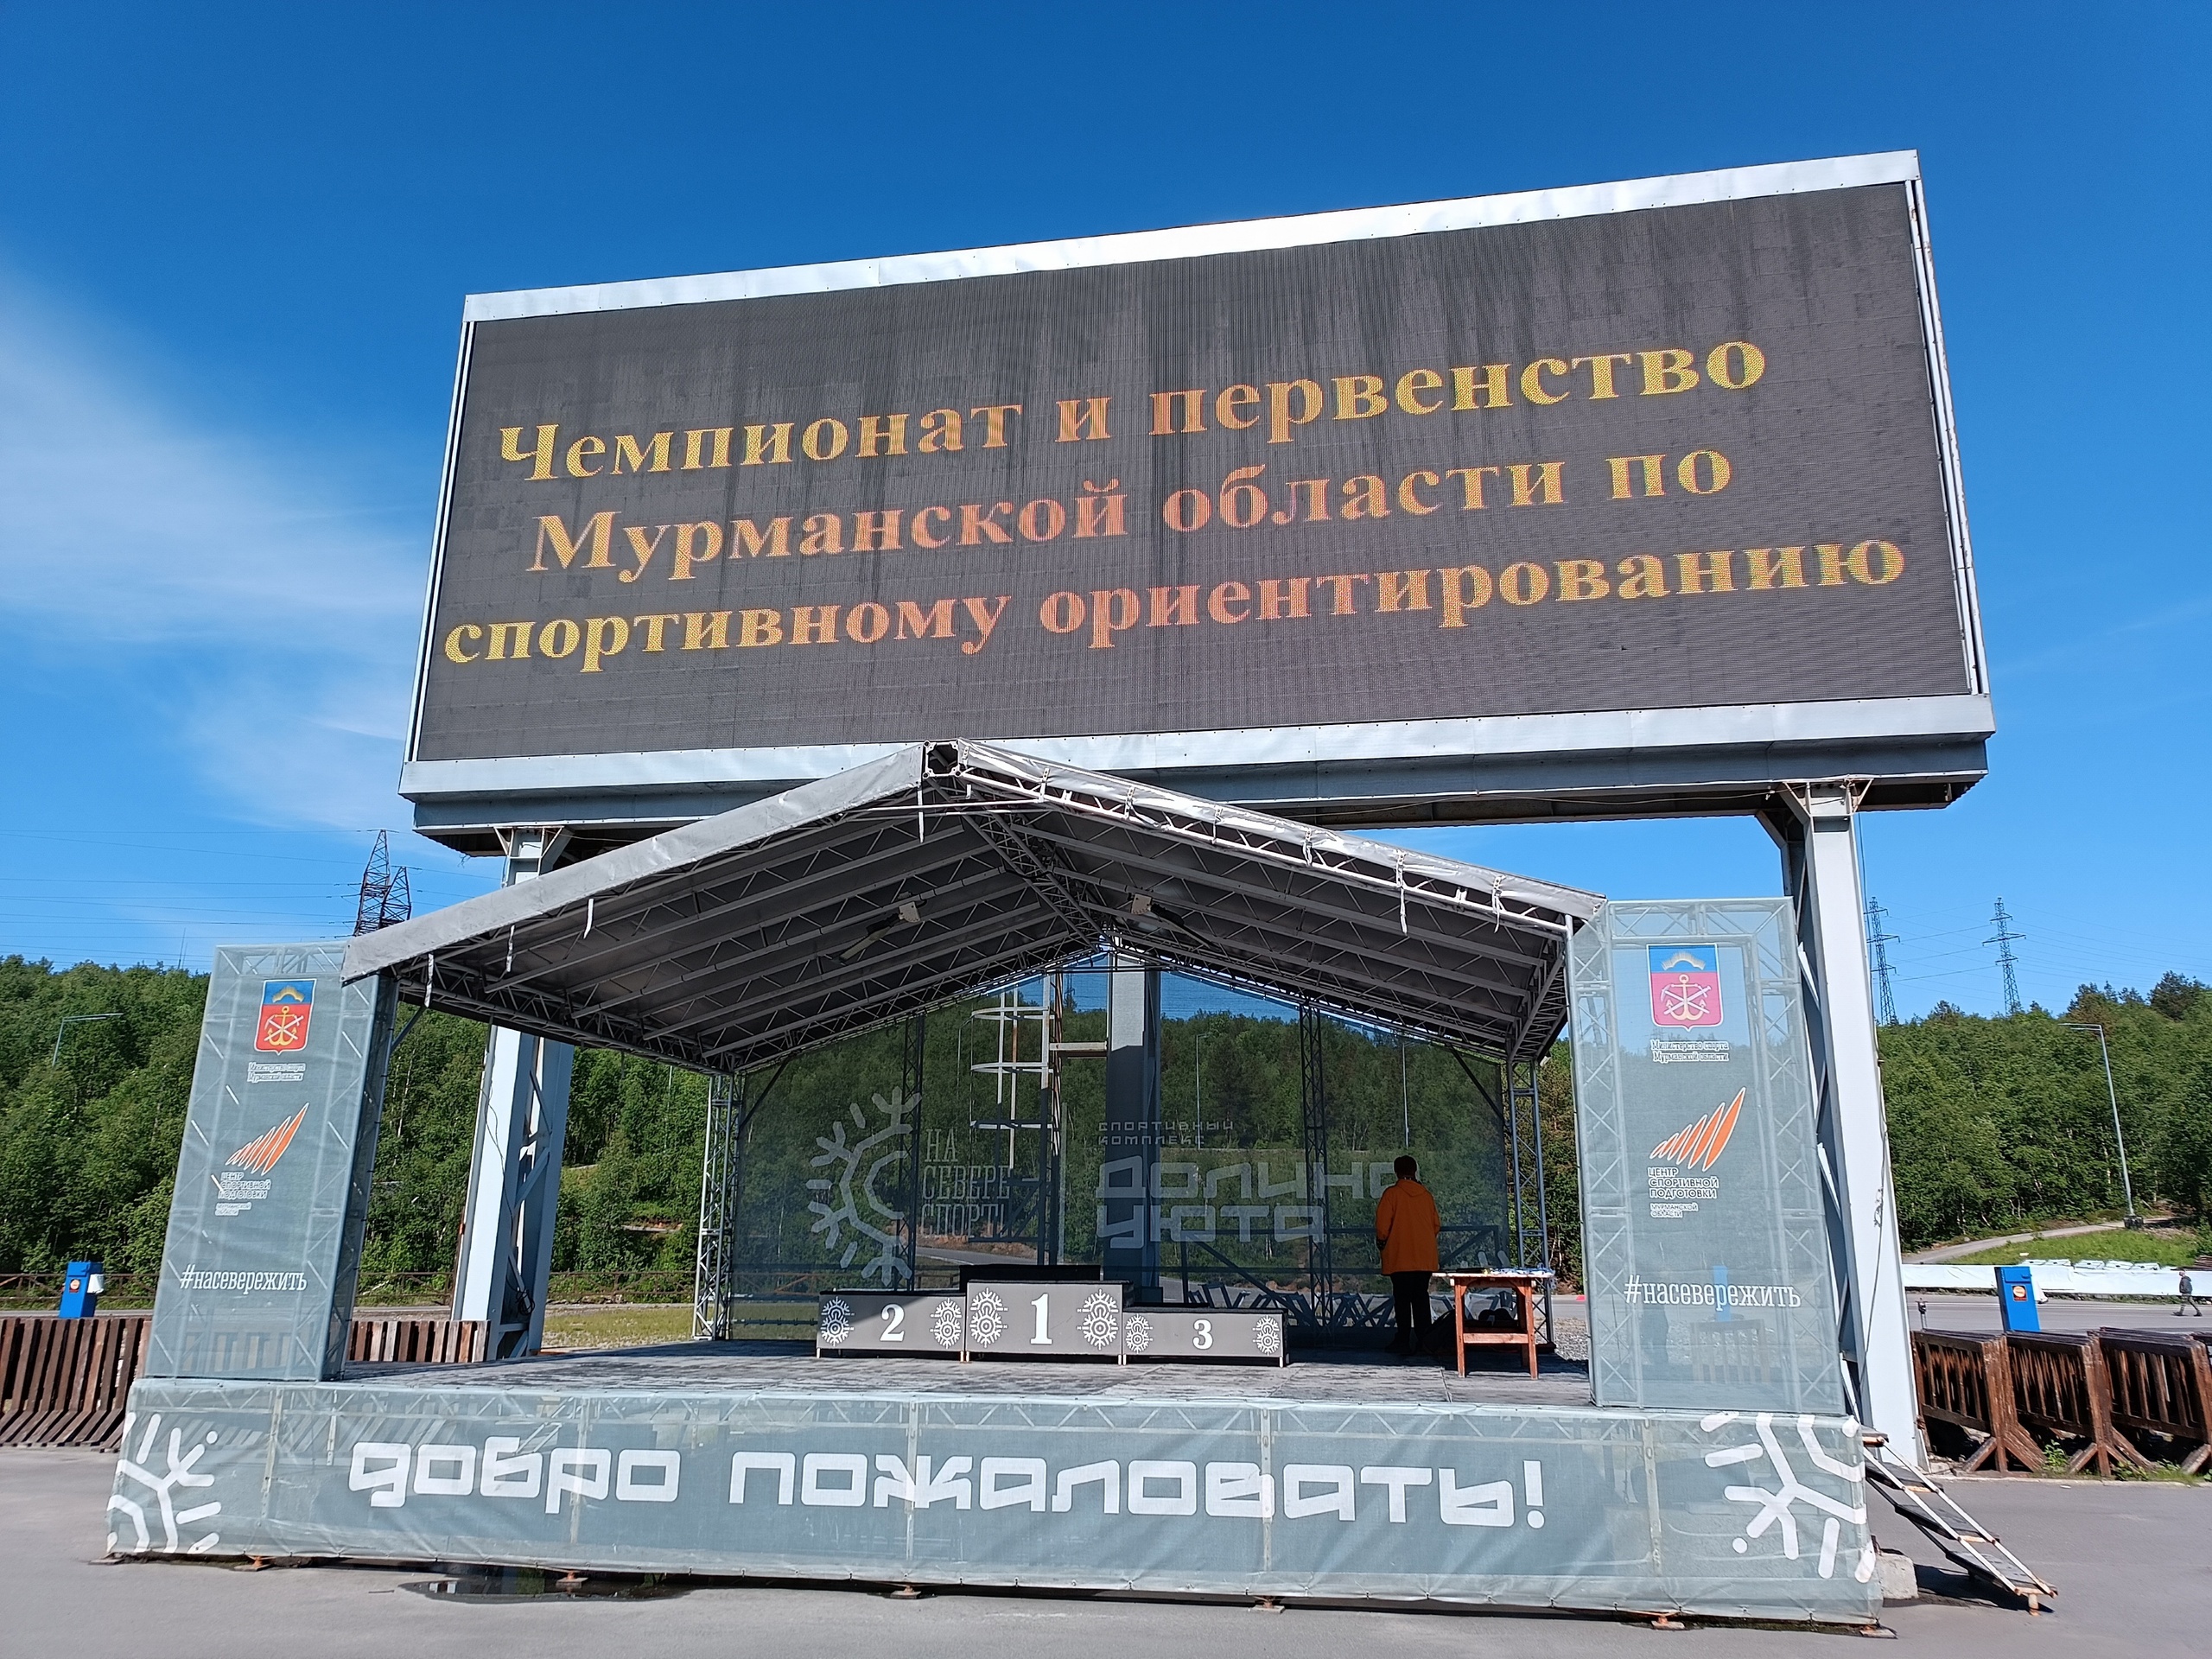 Чемпионат и первенство Мурманской области по спортивному ориентирооанию 